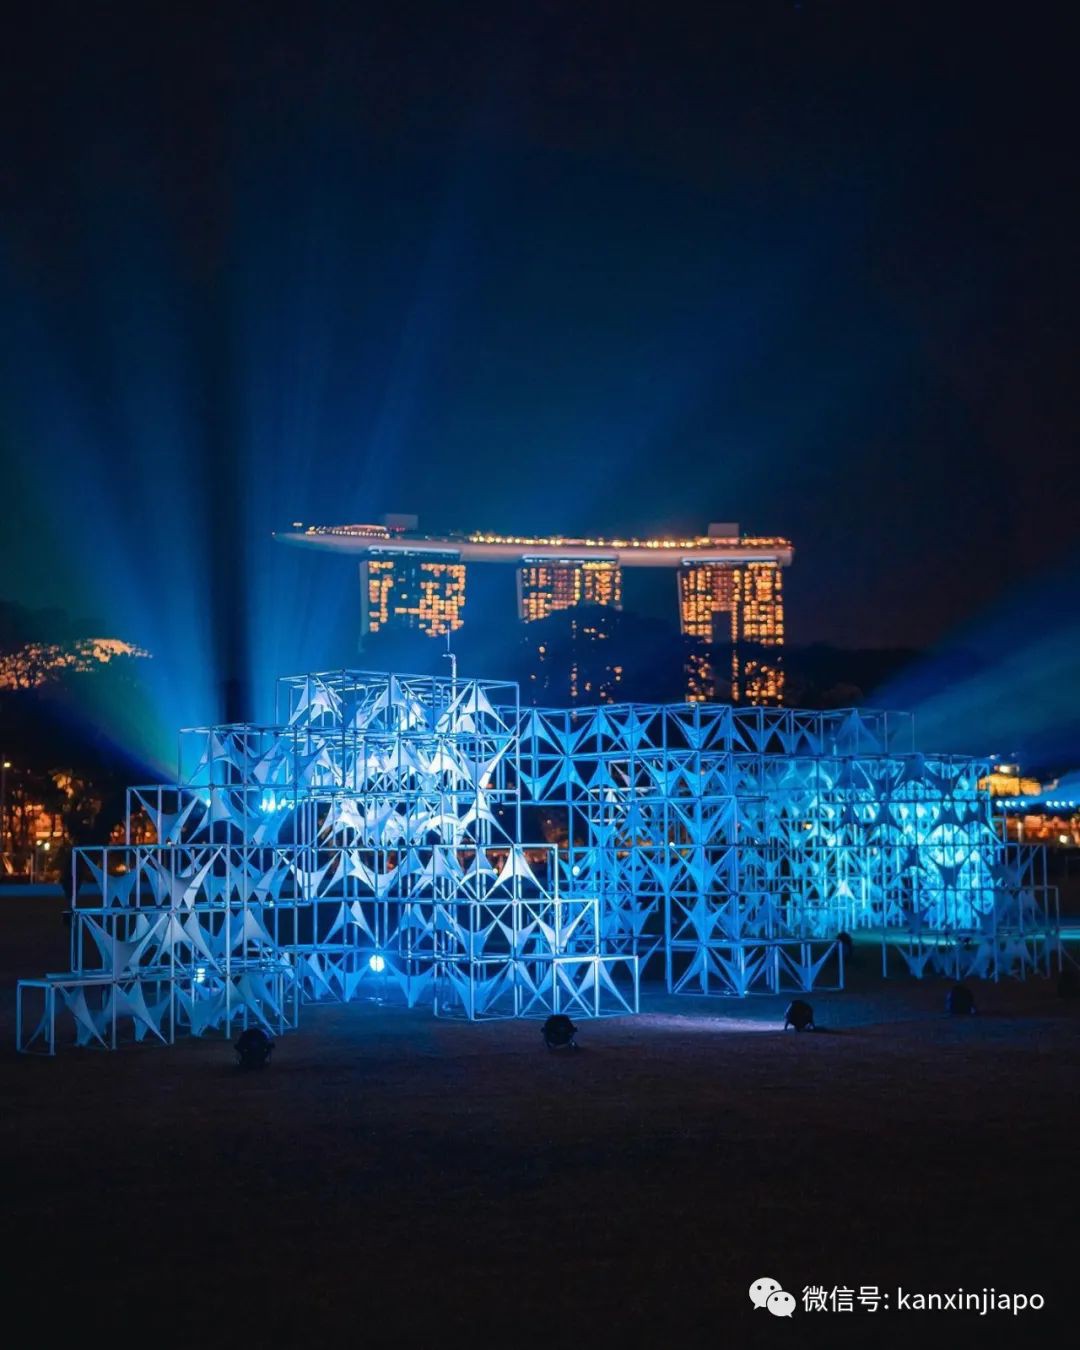 新加坡艺术节开幕啦！百年历史建筑已换上绚丽新装等着你，还有灯光秀、LIVE表演、互动游戏...